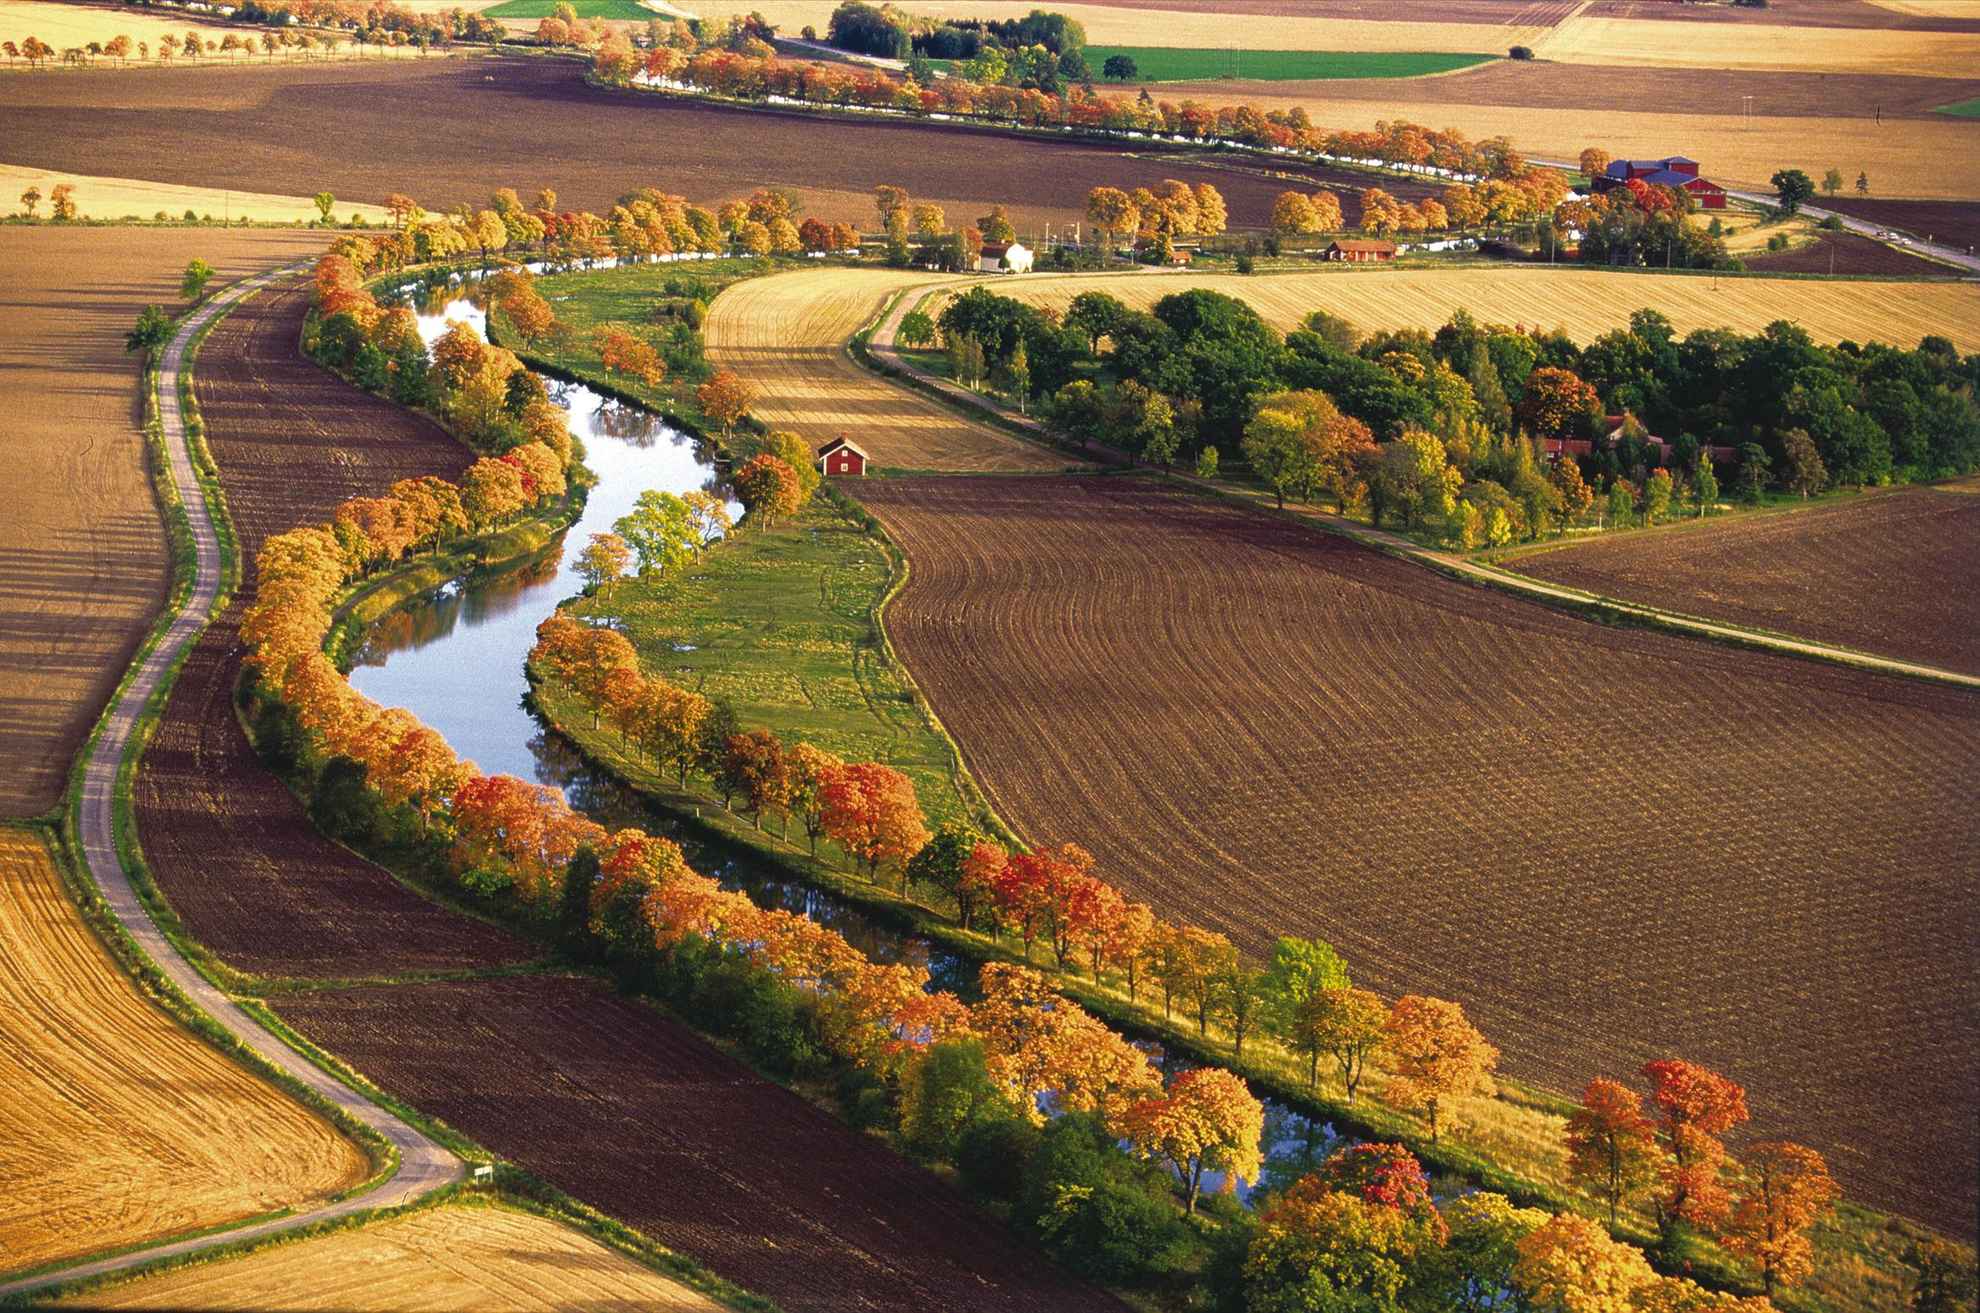 Herbstlich gefärbte Baumalleen säumen das Ufer des geschwungenen Göta Kanals.